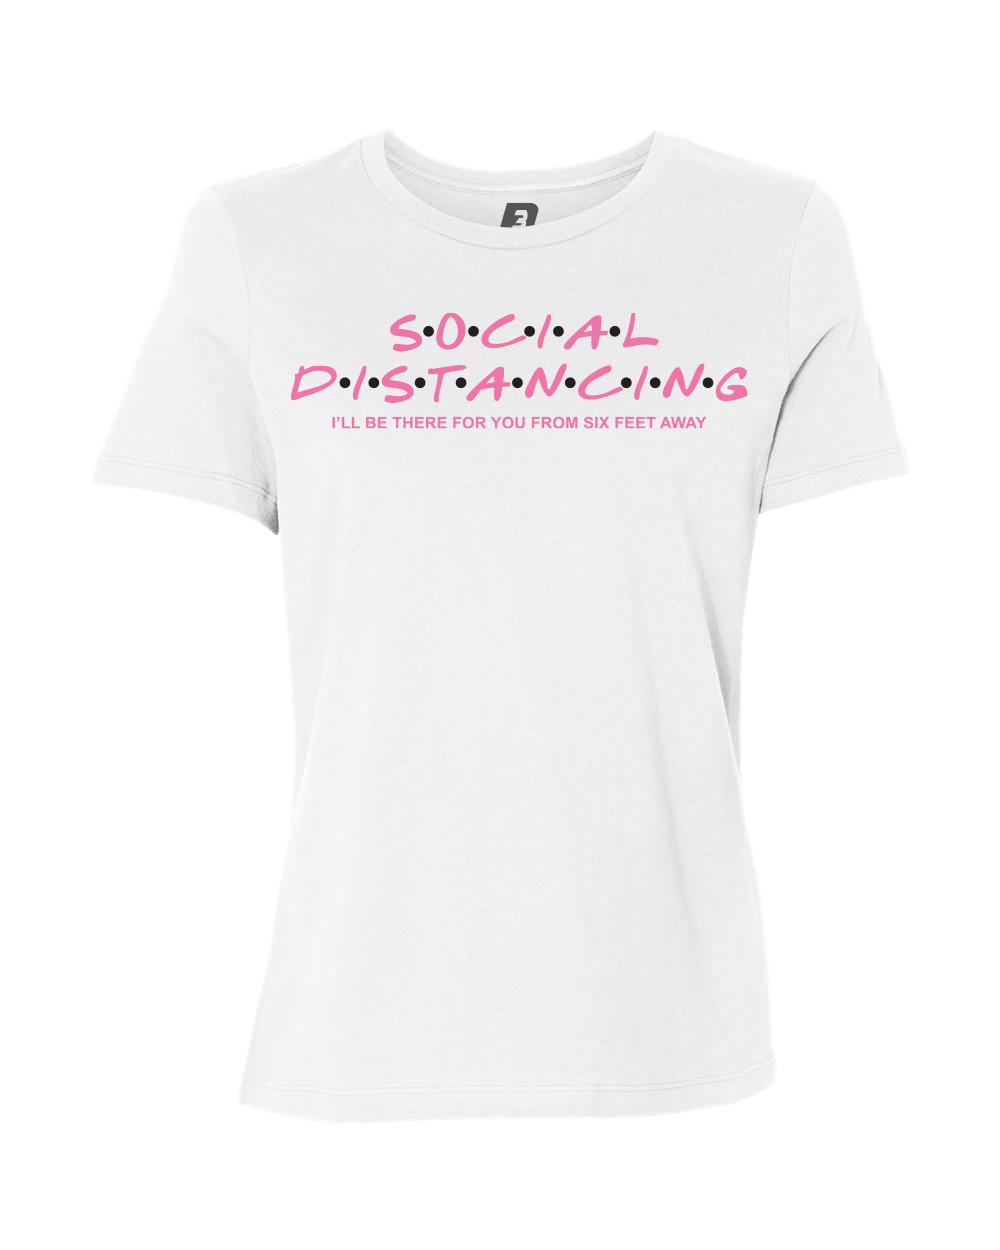 Pink Dots T-Shirt (Women's)